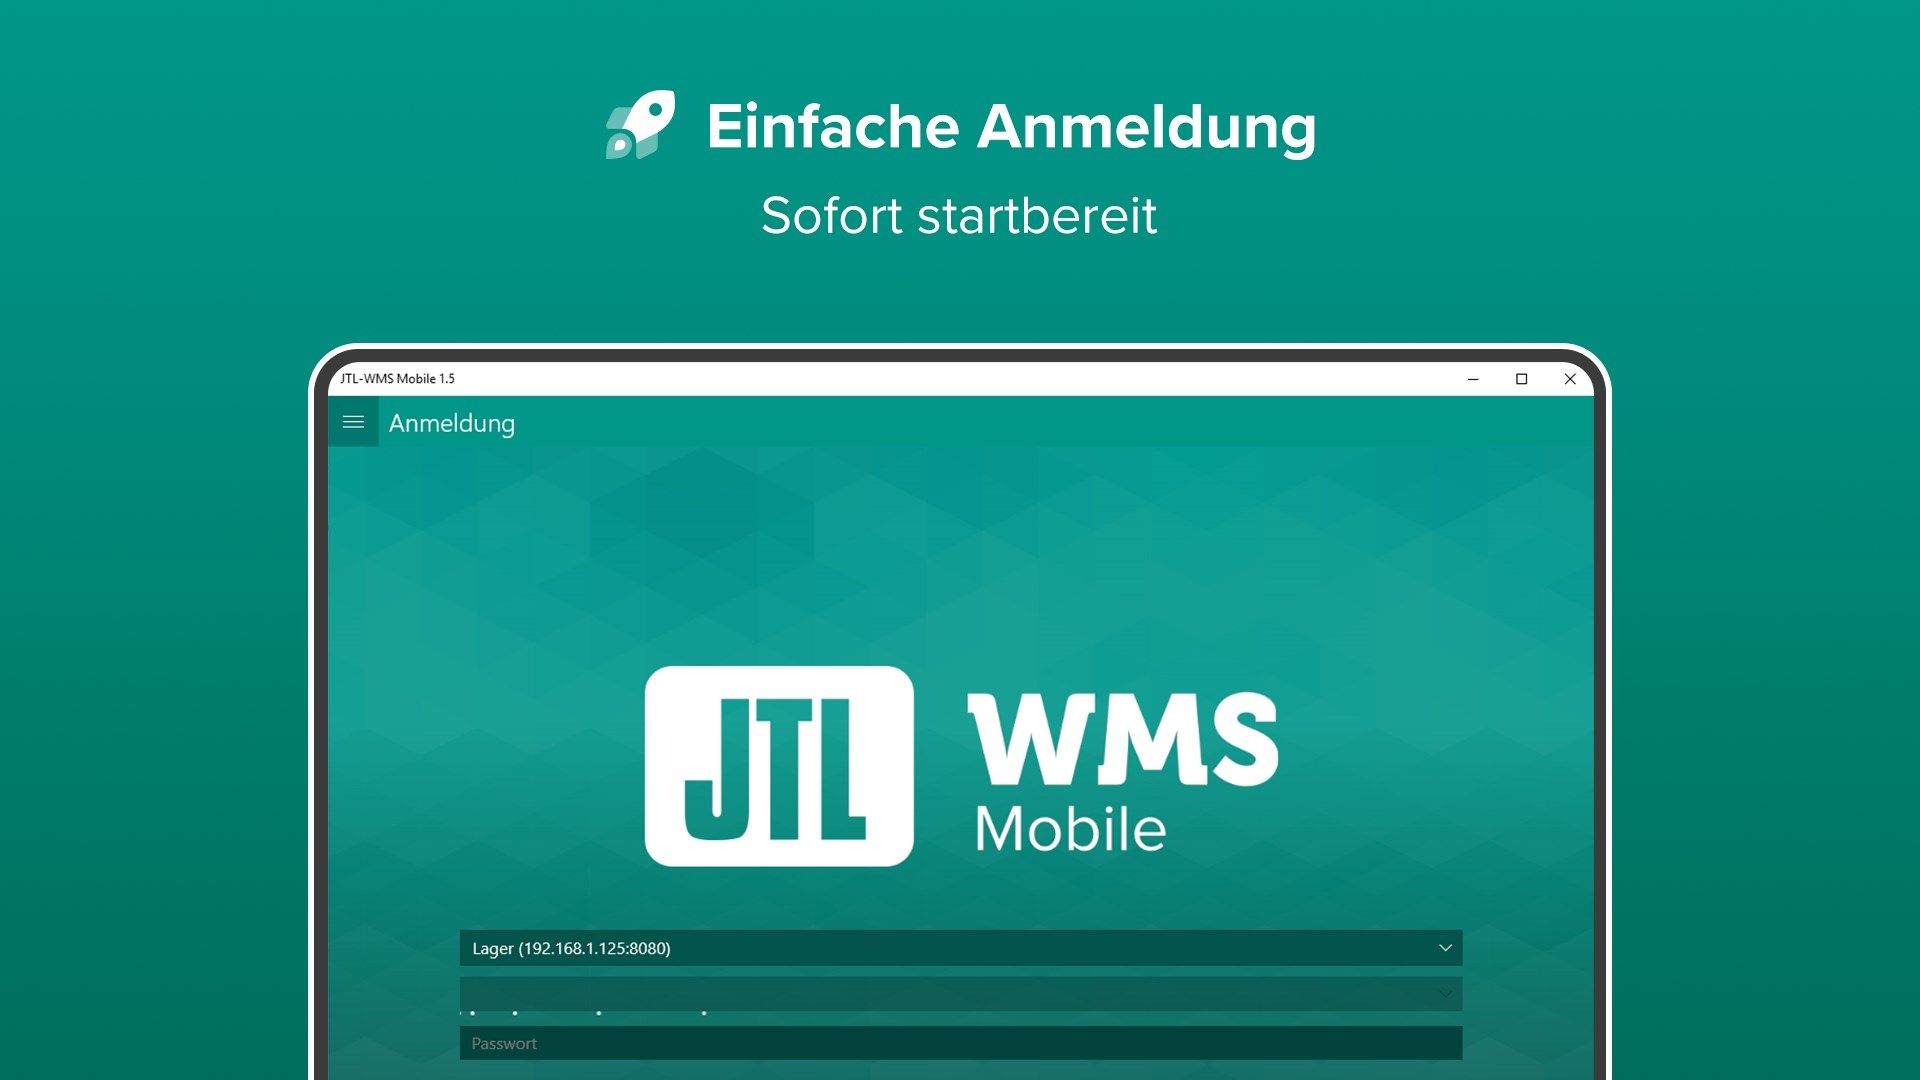 JTL-WMS Mobile 1.5